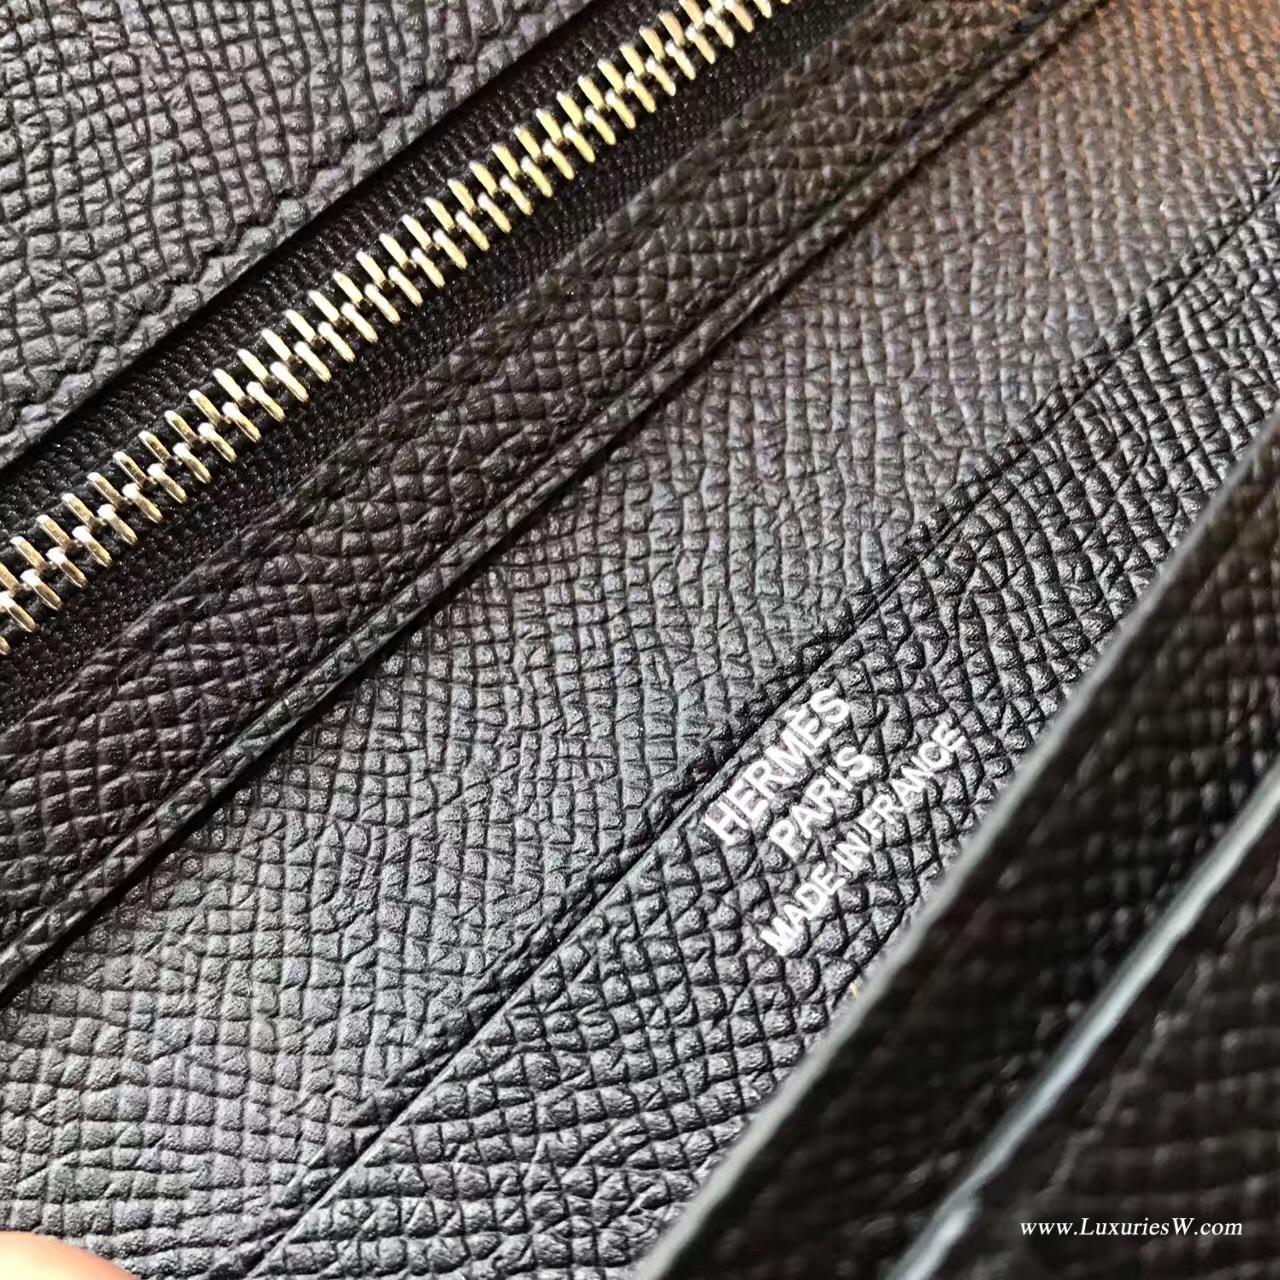 香港九龍城區紅磡 愛馬仕長款錢包 Hermes Bearn wallet Epsom CK89 Nior 黑色银扣